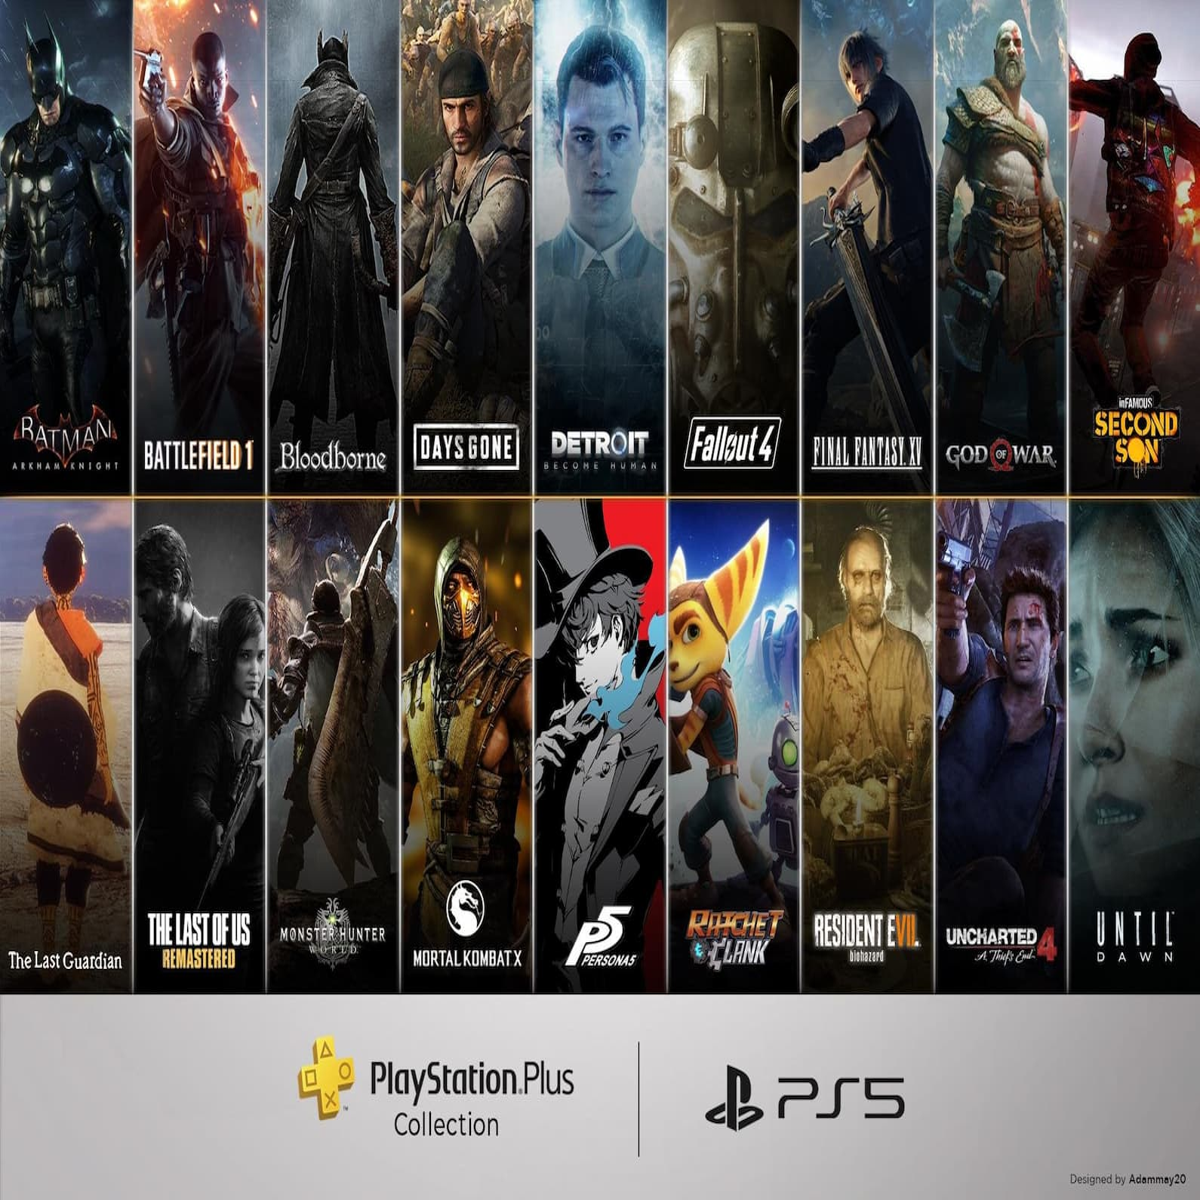 Anunciado os jogos do Playstation Plus de Maio 2023